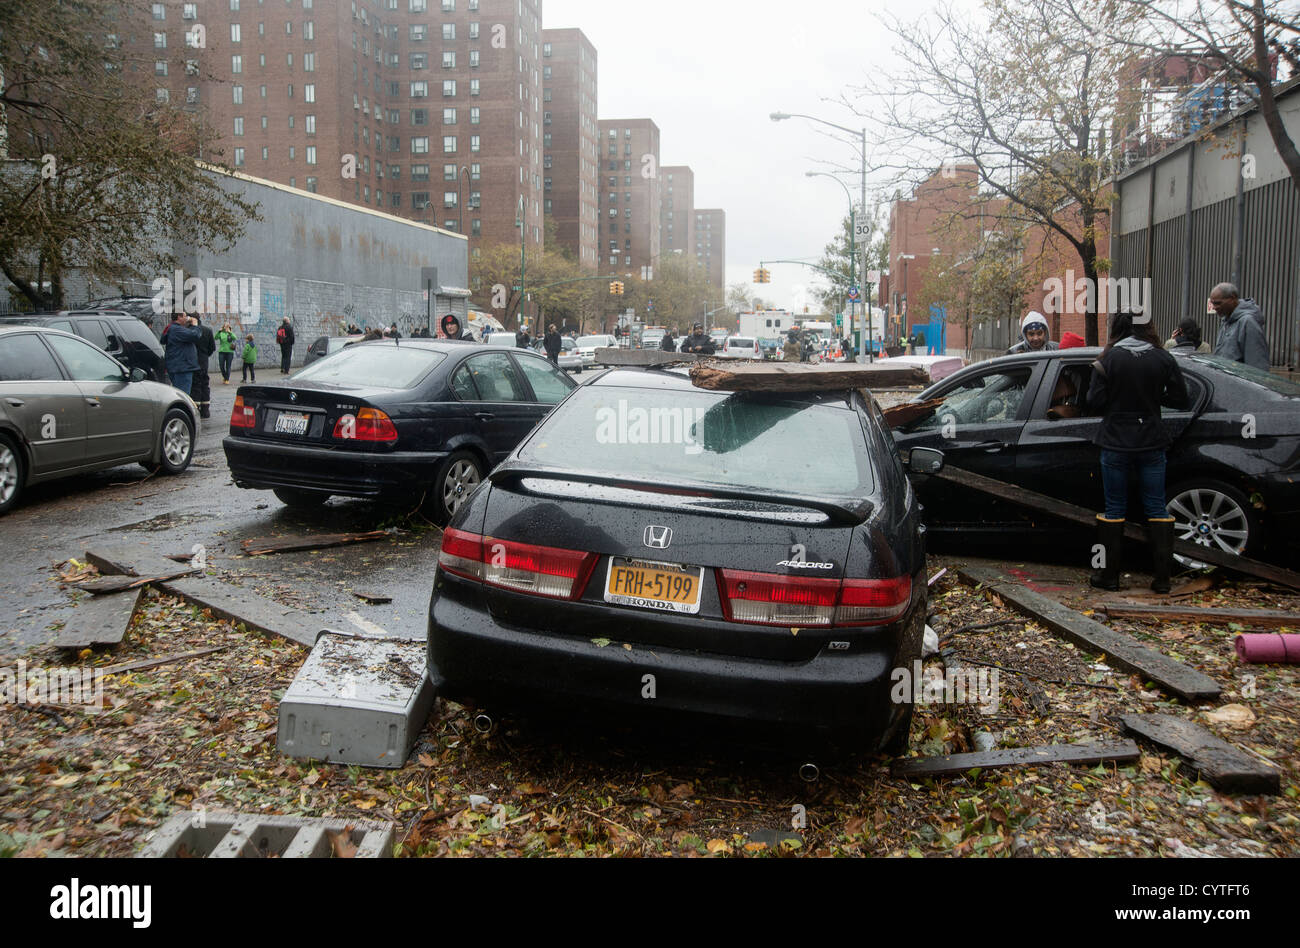 Avenue c la mattina dopo l uragano Sandy ha colpito la città di New York. Le automobili e i detriti sono sparsi in tutta la strada a causa di inondazioni. Foto Stock